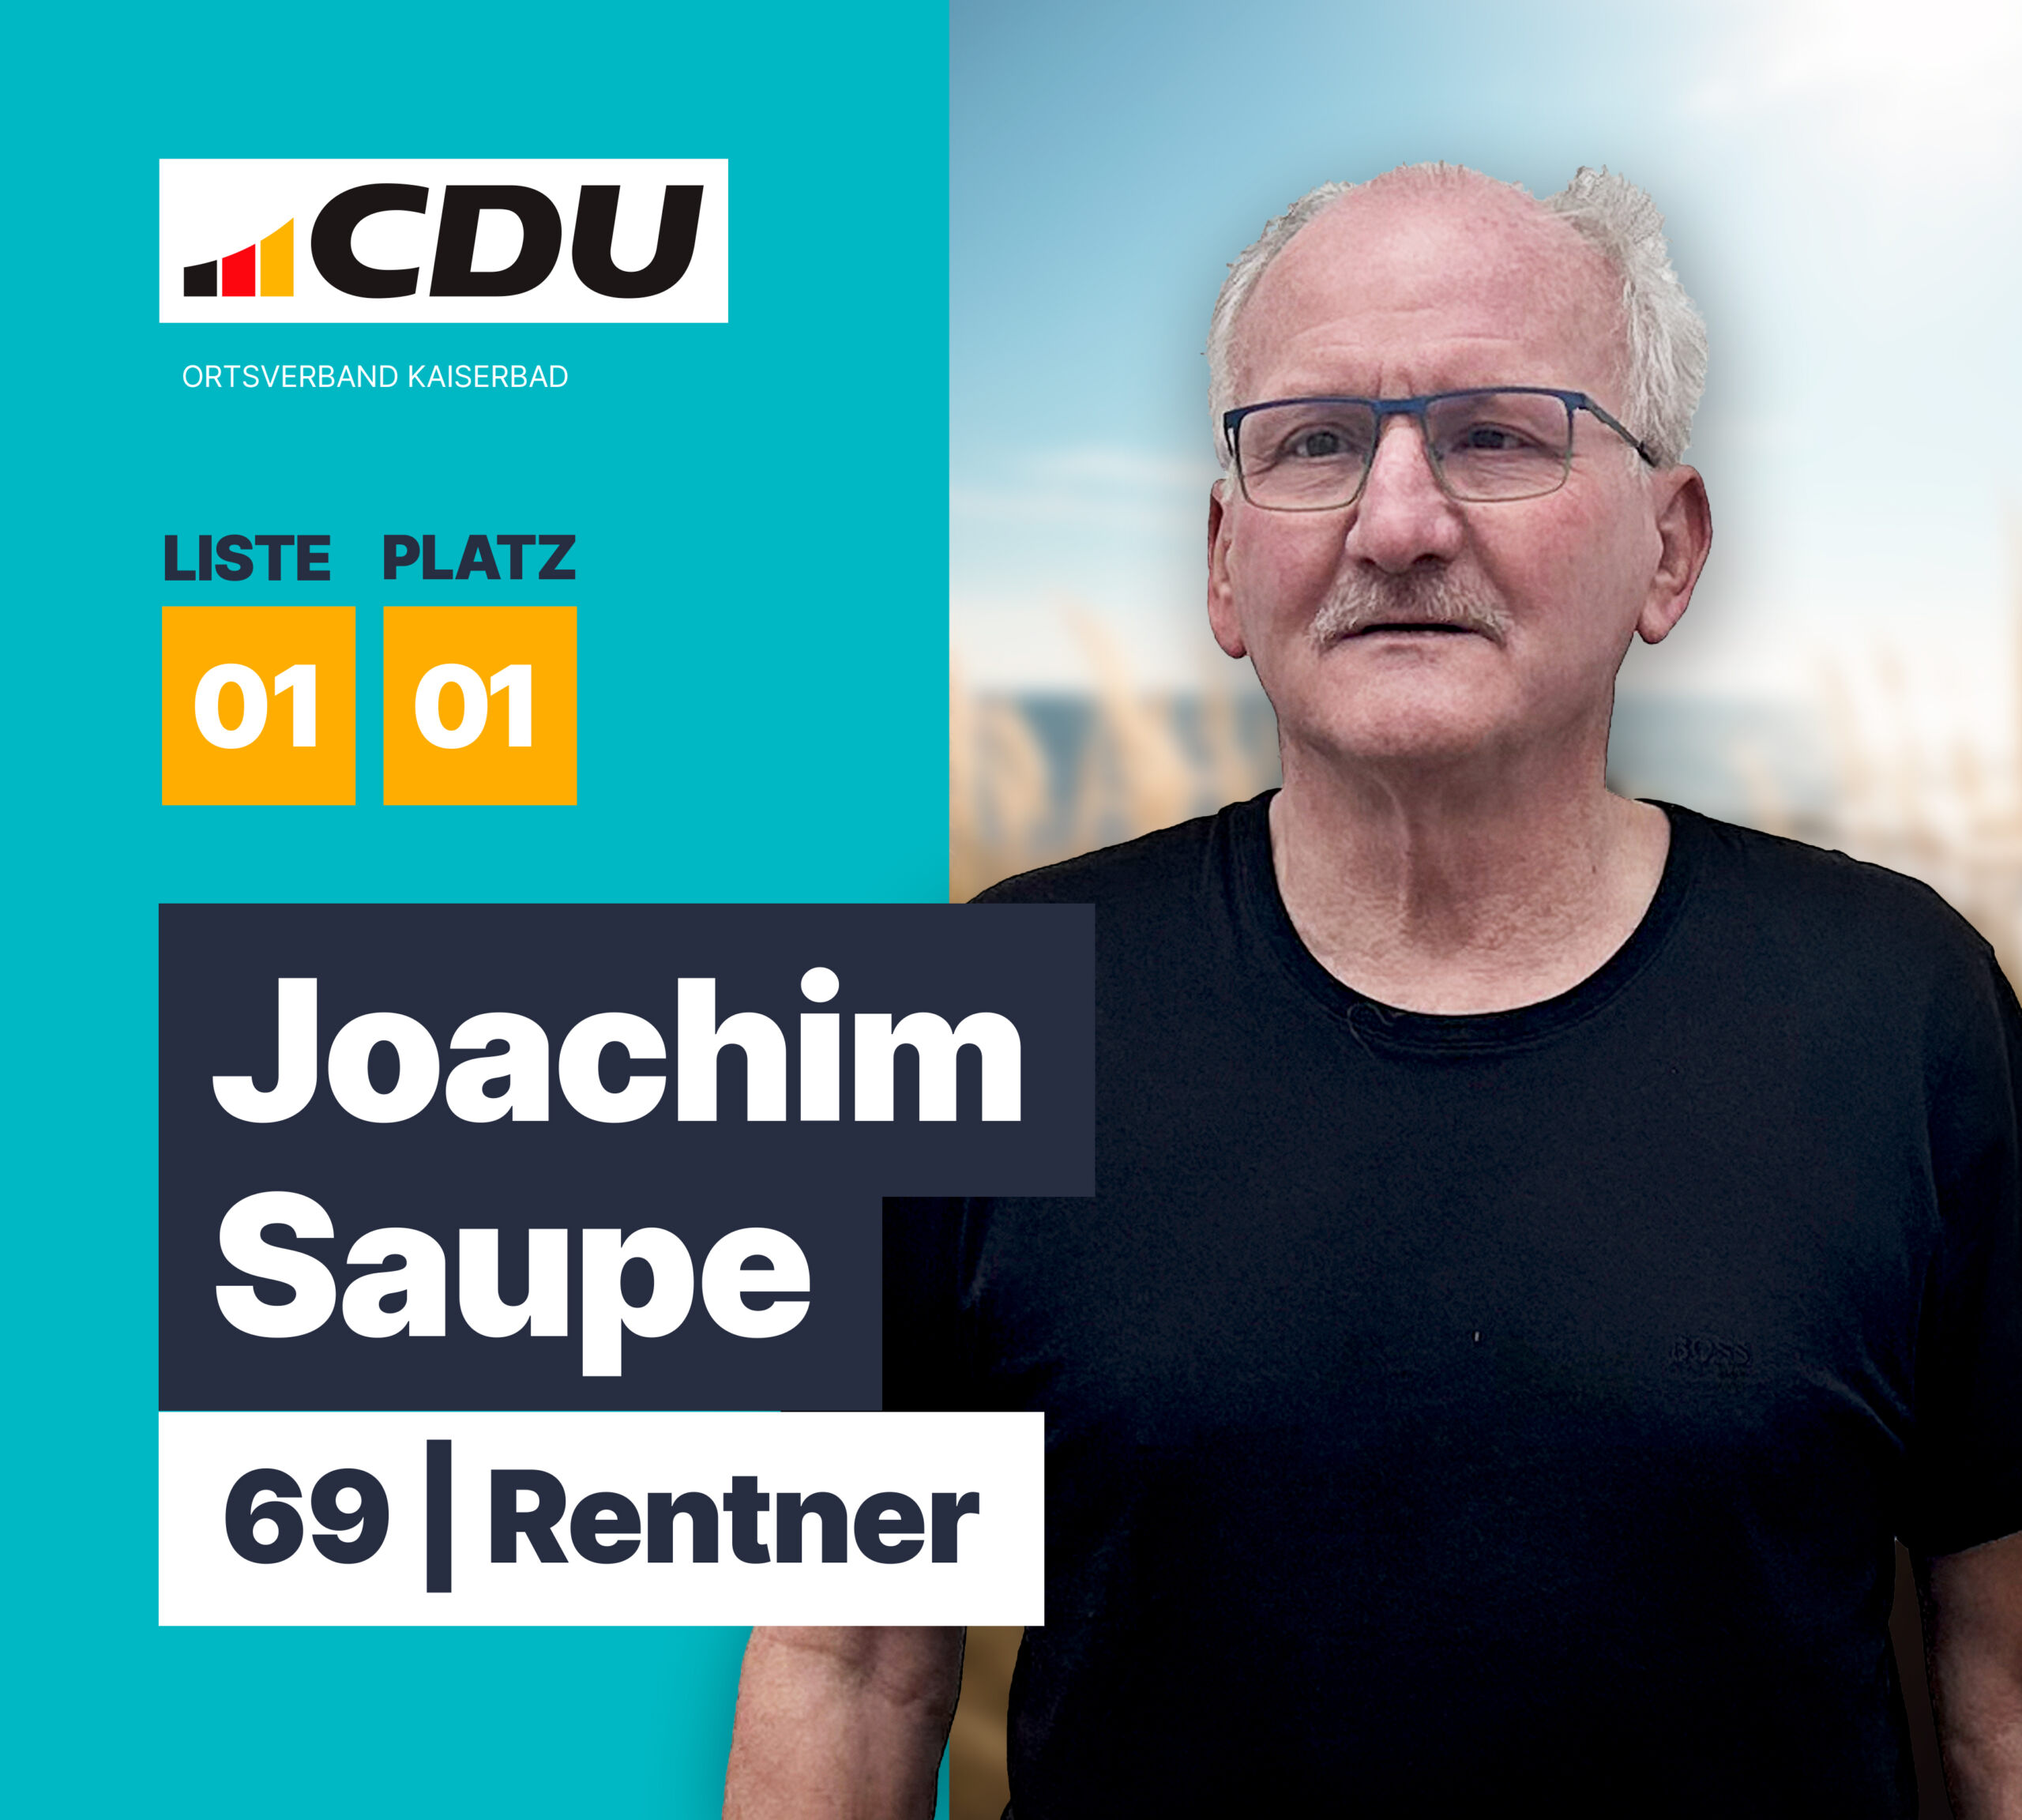 Joachim Saupe